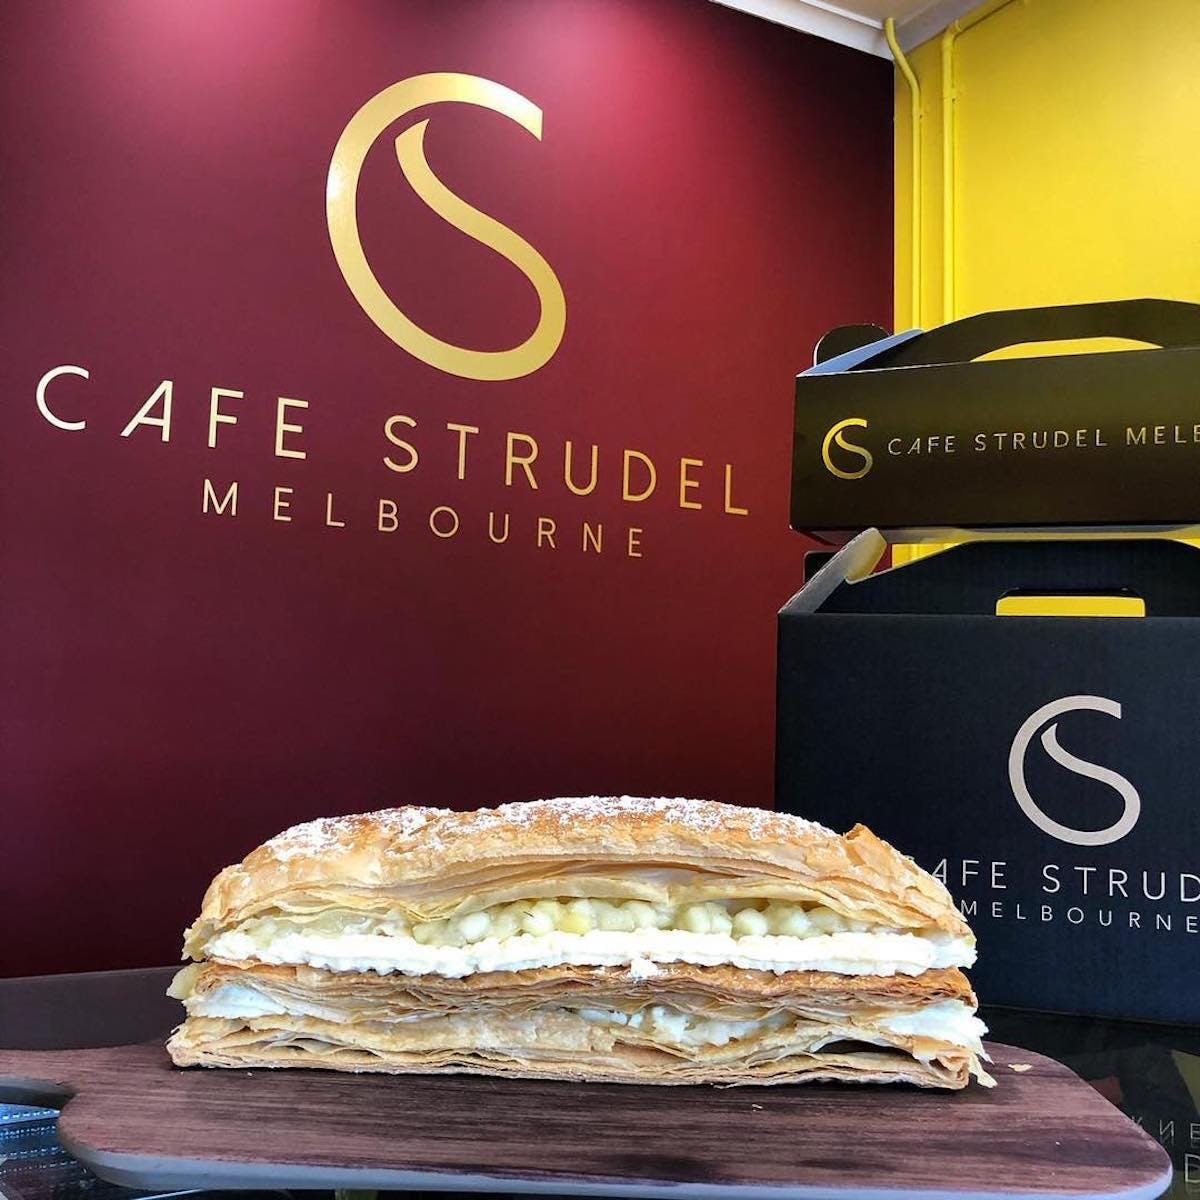 Cafe Strudel Melbourne - South Australia Travel